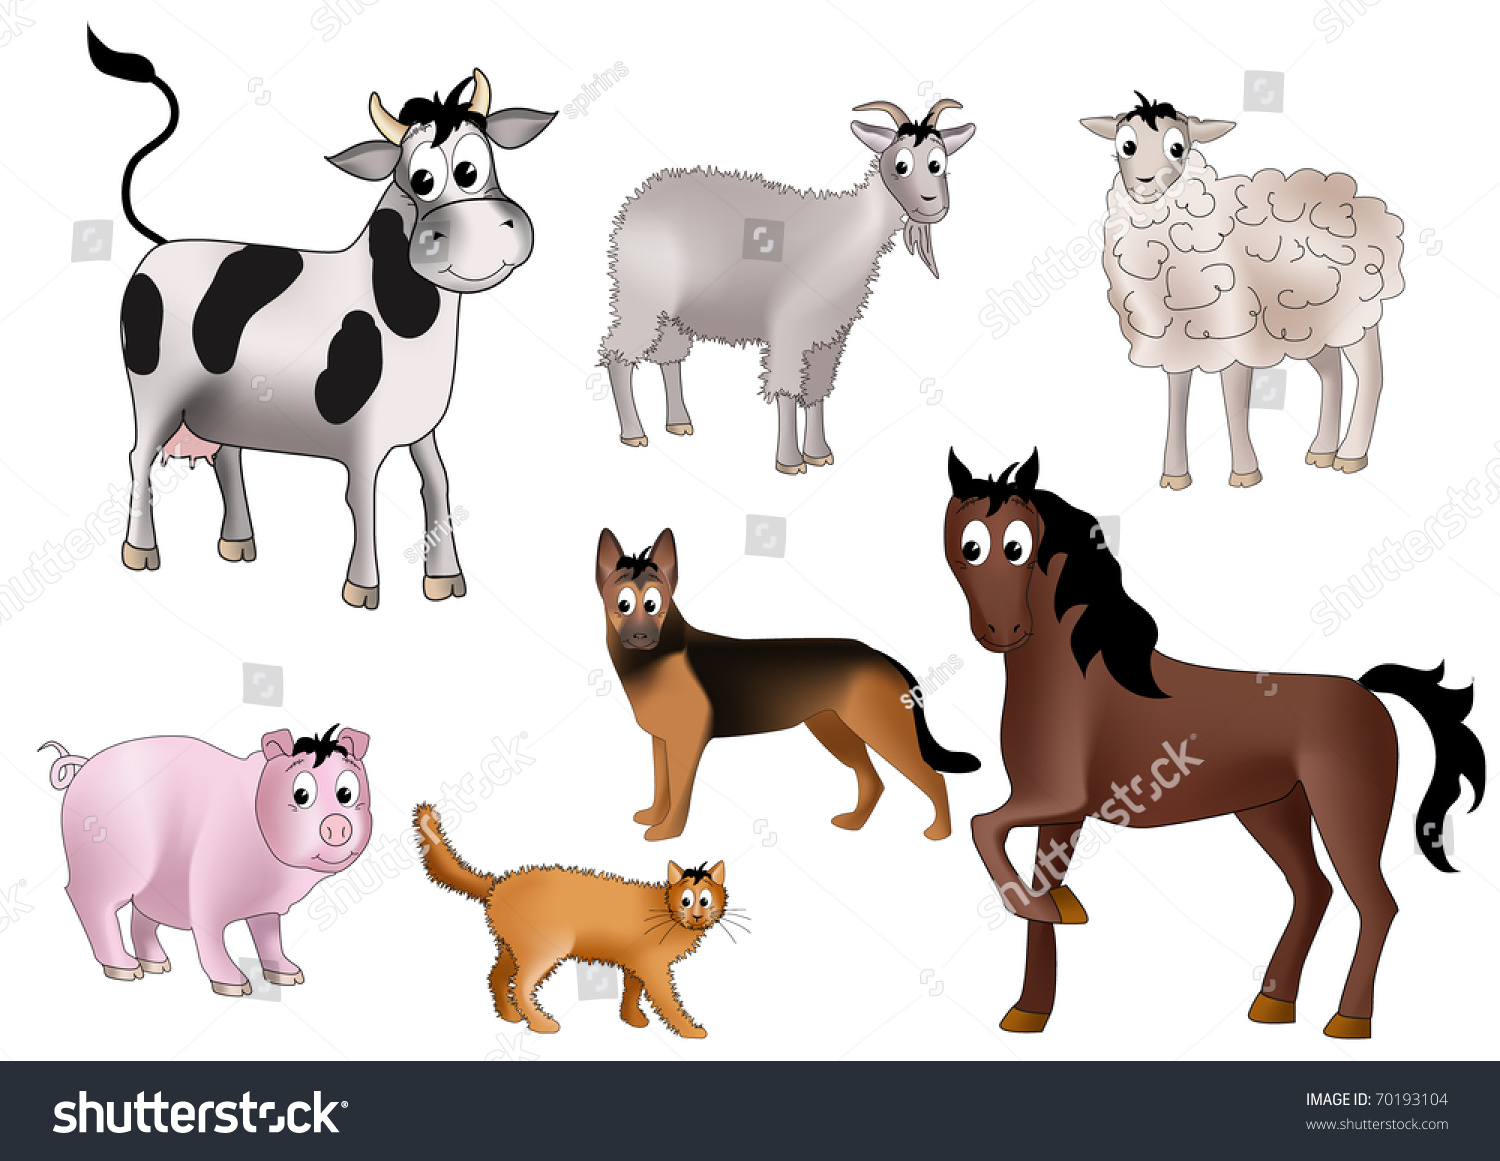 Корова, свинья, лошадь, коза, овца (баран), кот, собака.